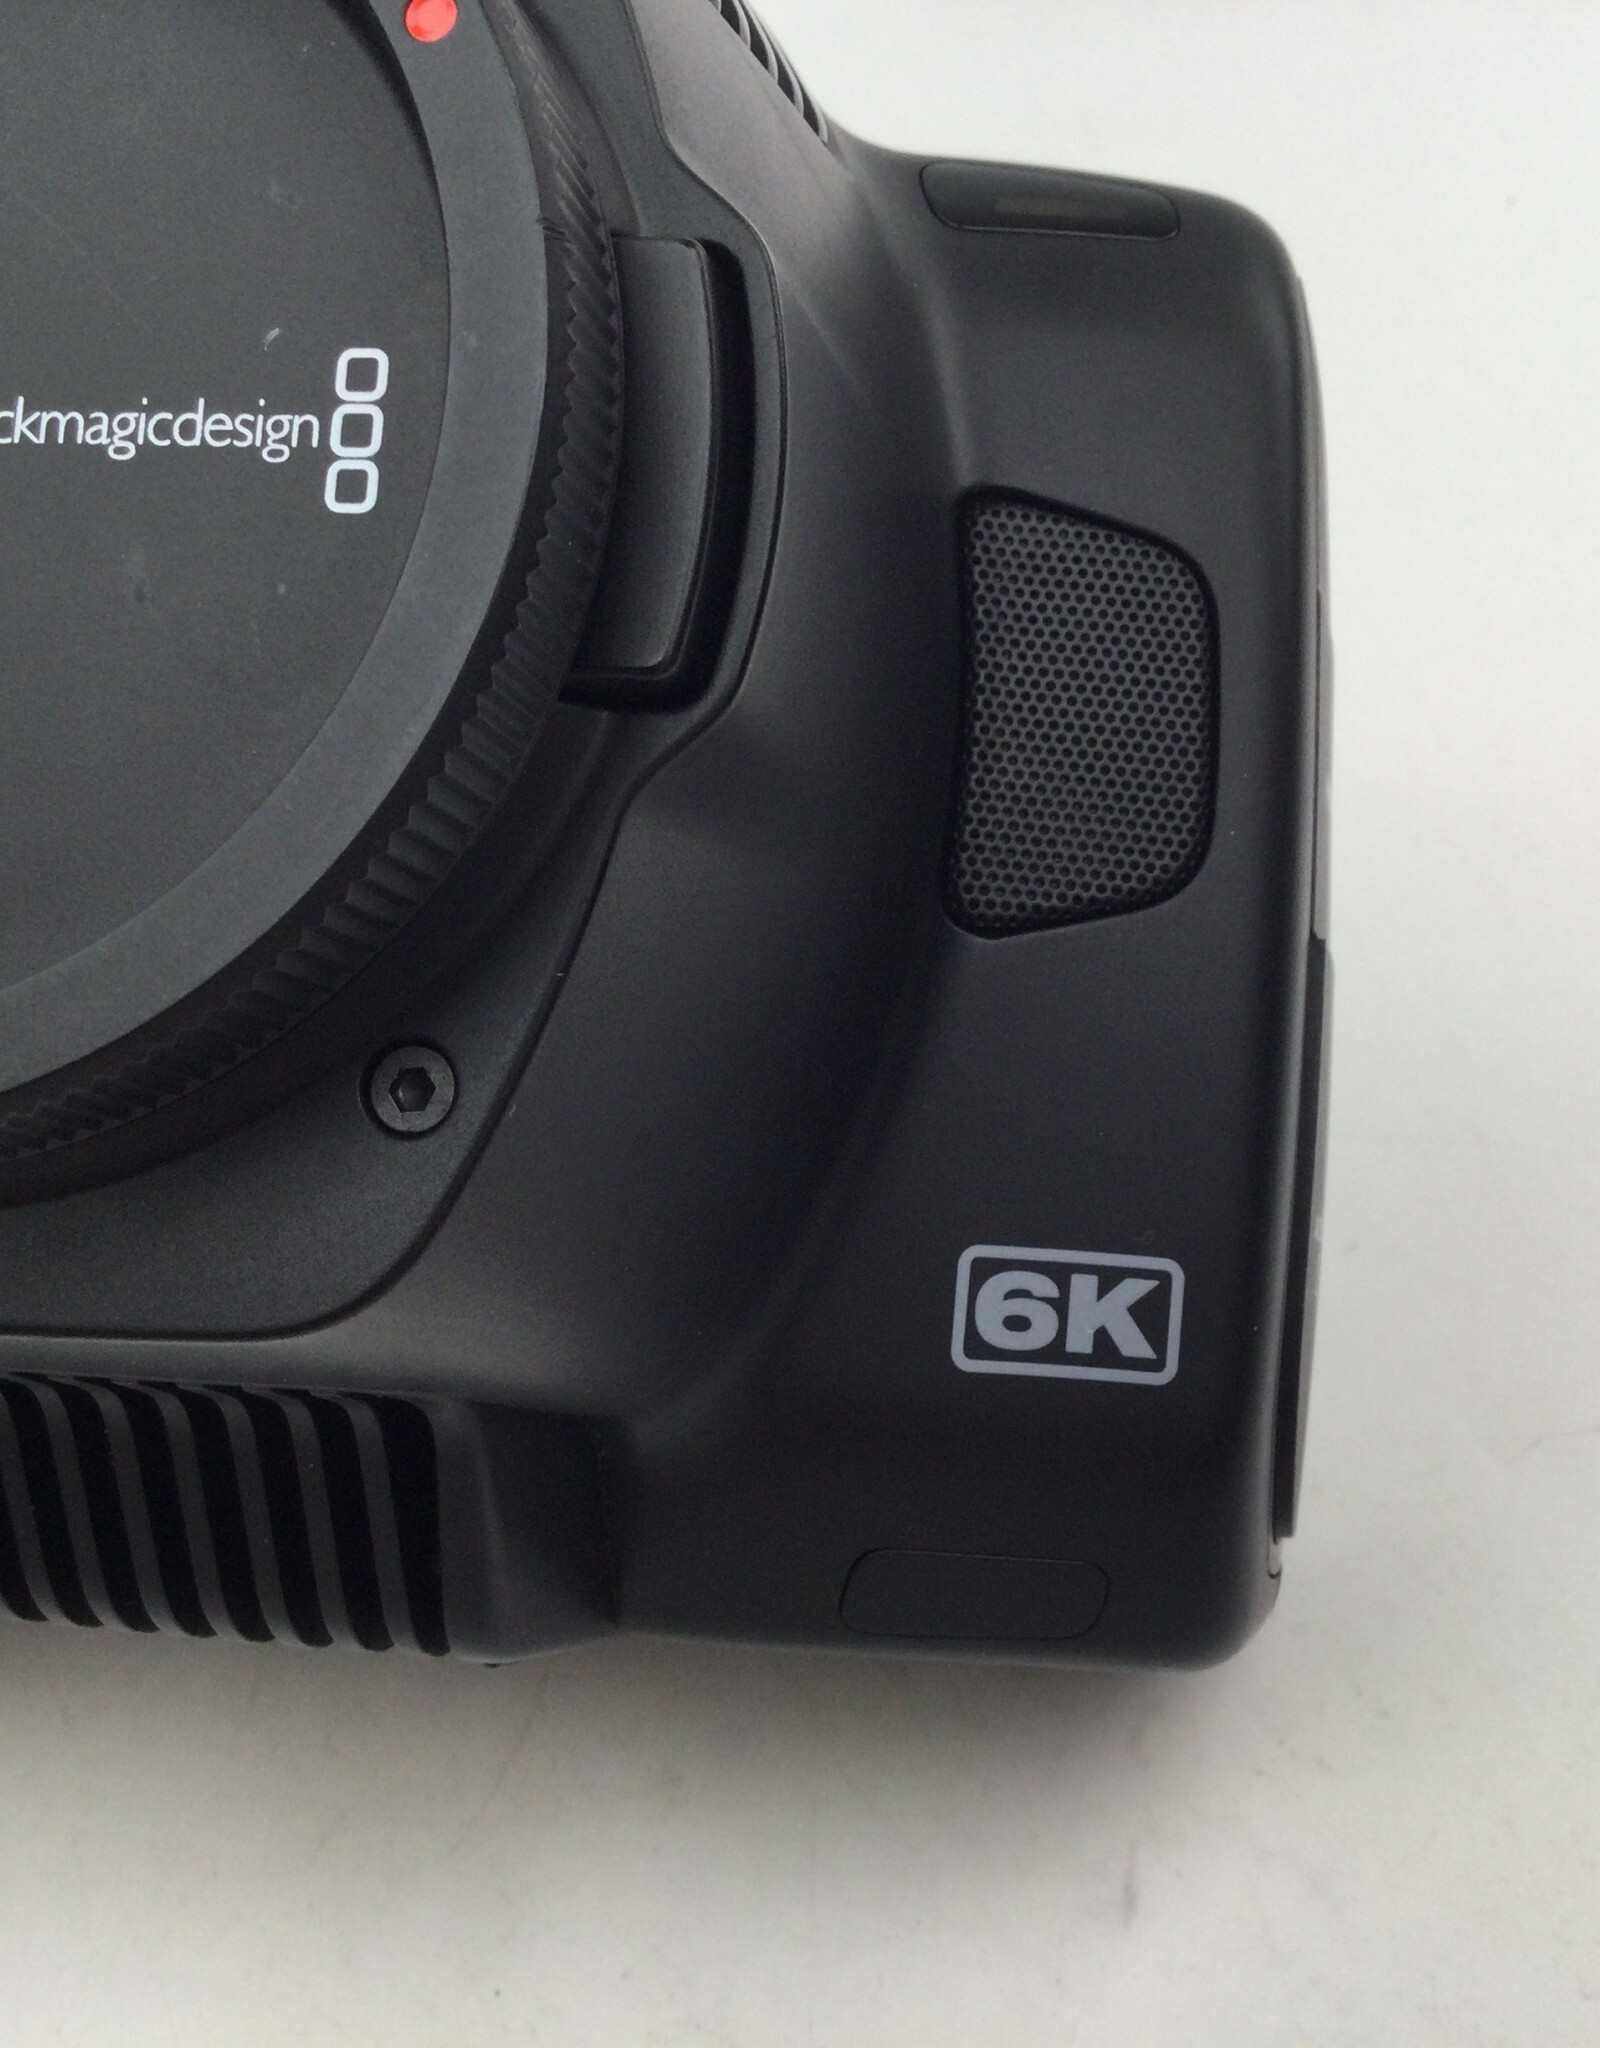 Blackmagic Design Blackmagic Design 6K Pro Camera Used Good